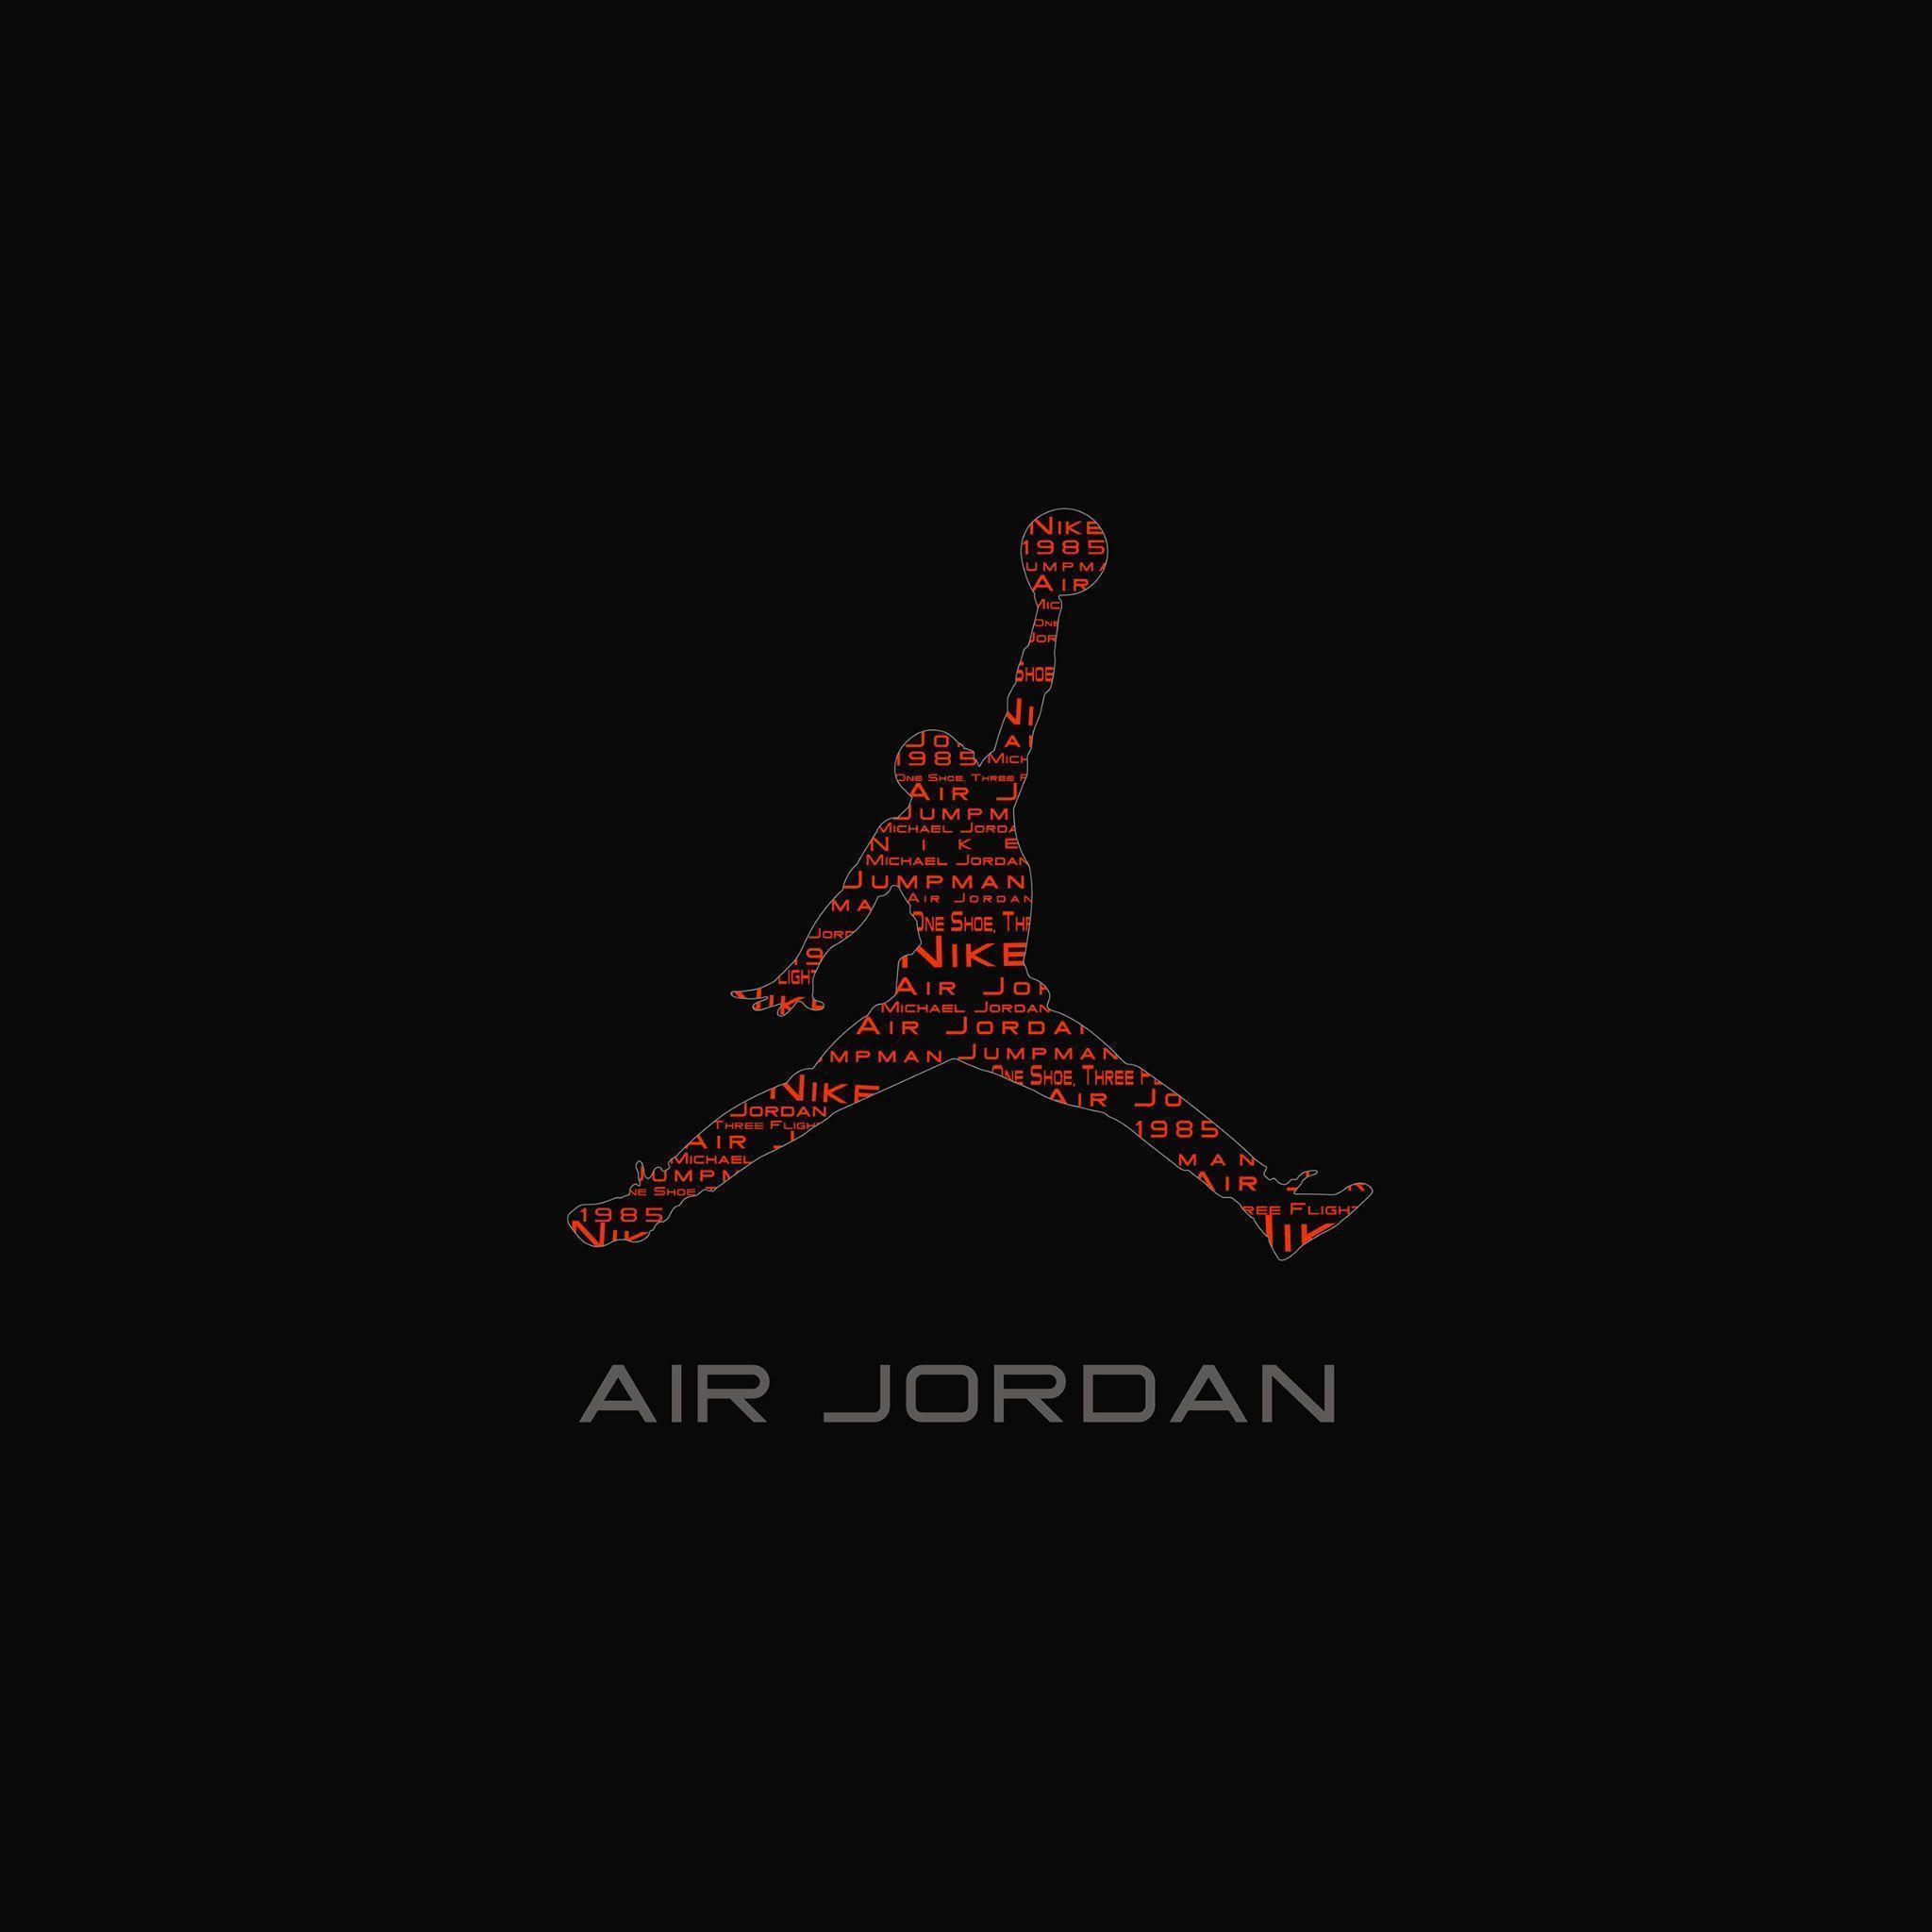 Red and Black Air Jordan Logo - Air Jordan Wallpapers - Wallpaper Cave